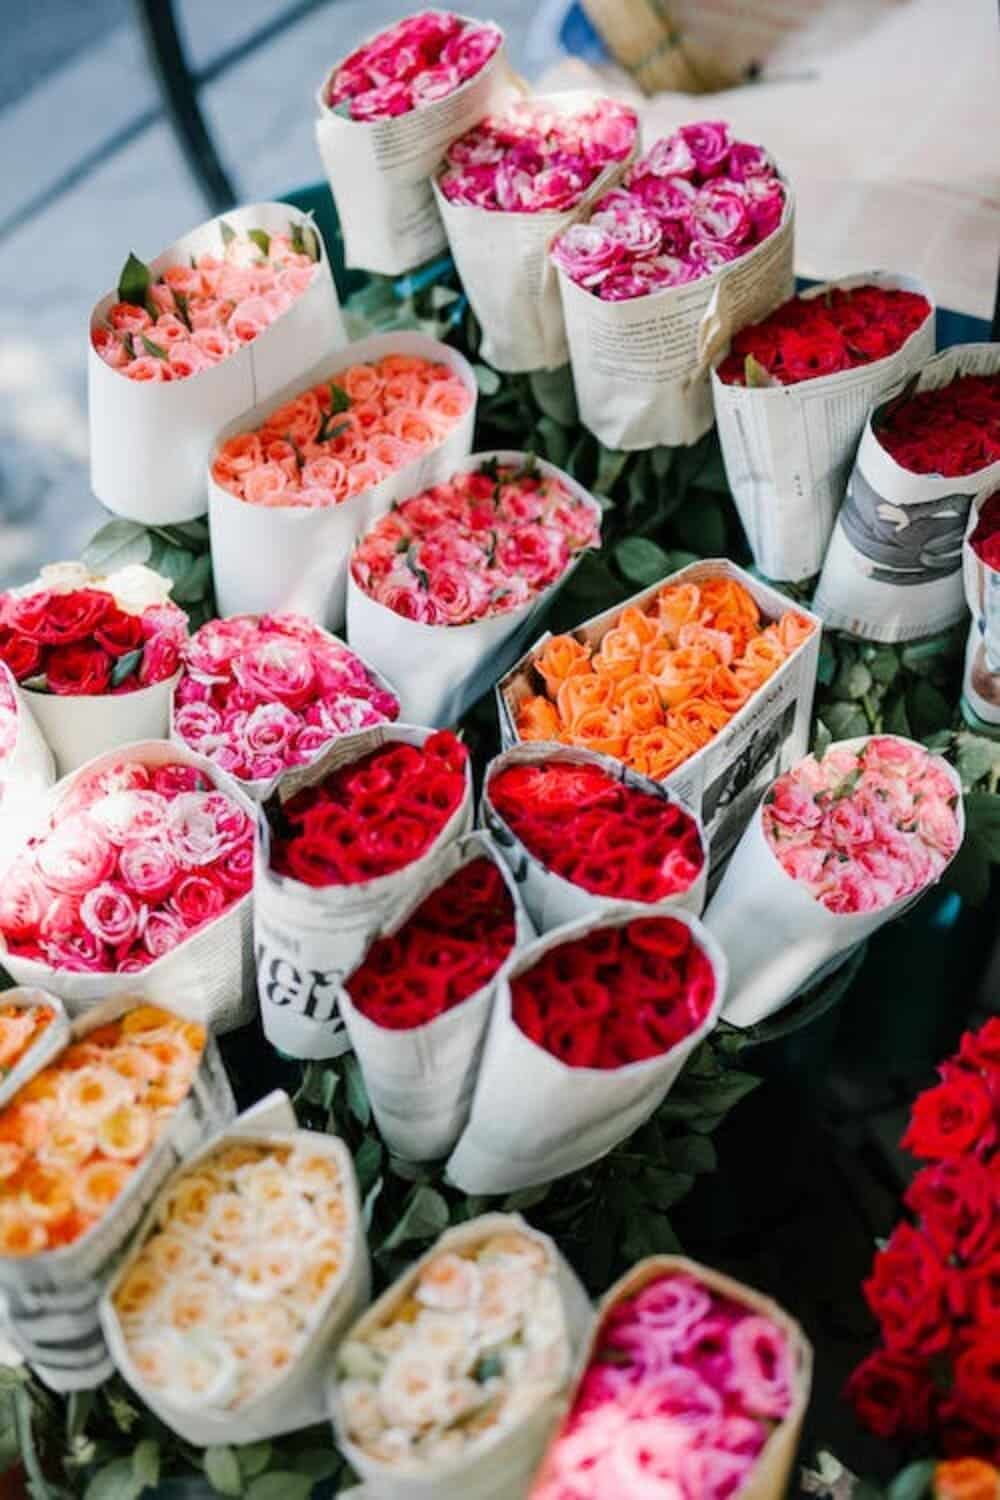 محلات شراء الورد في الرياض